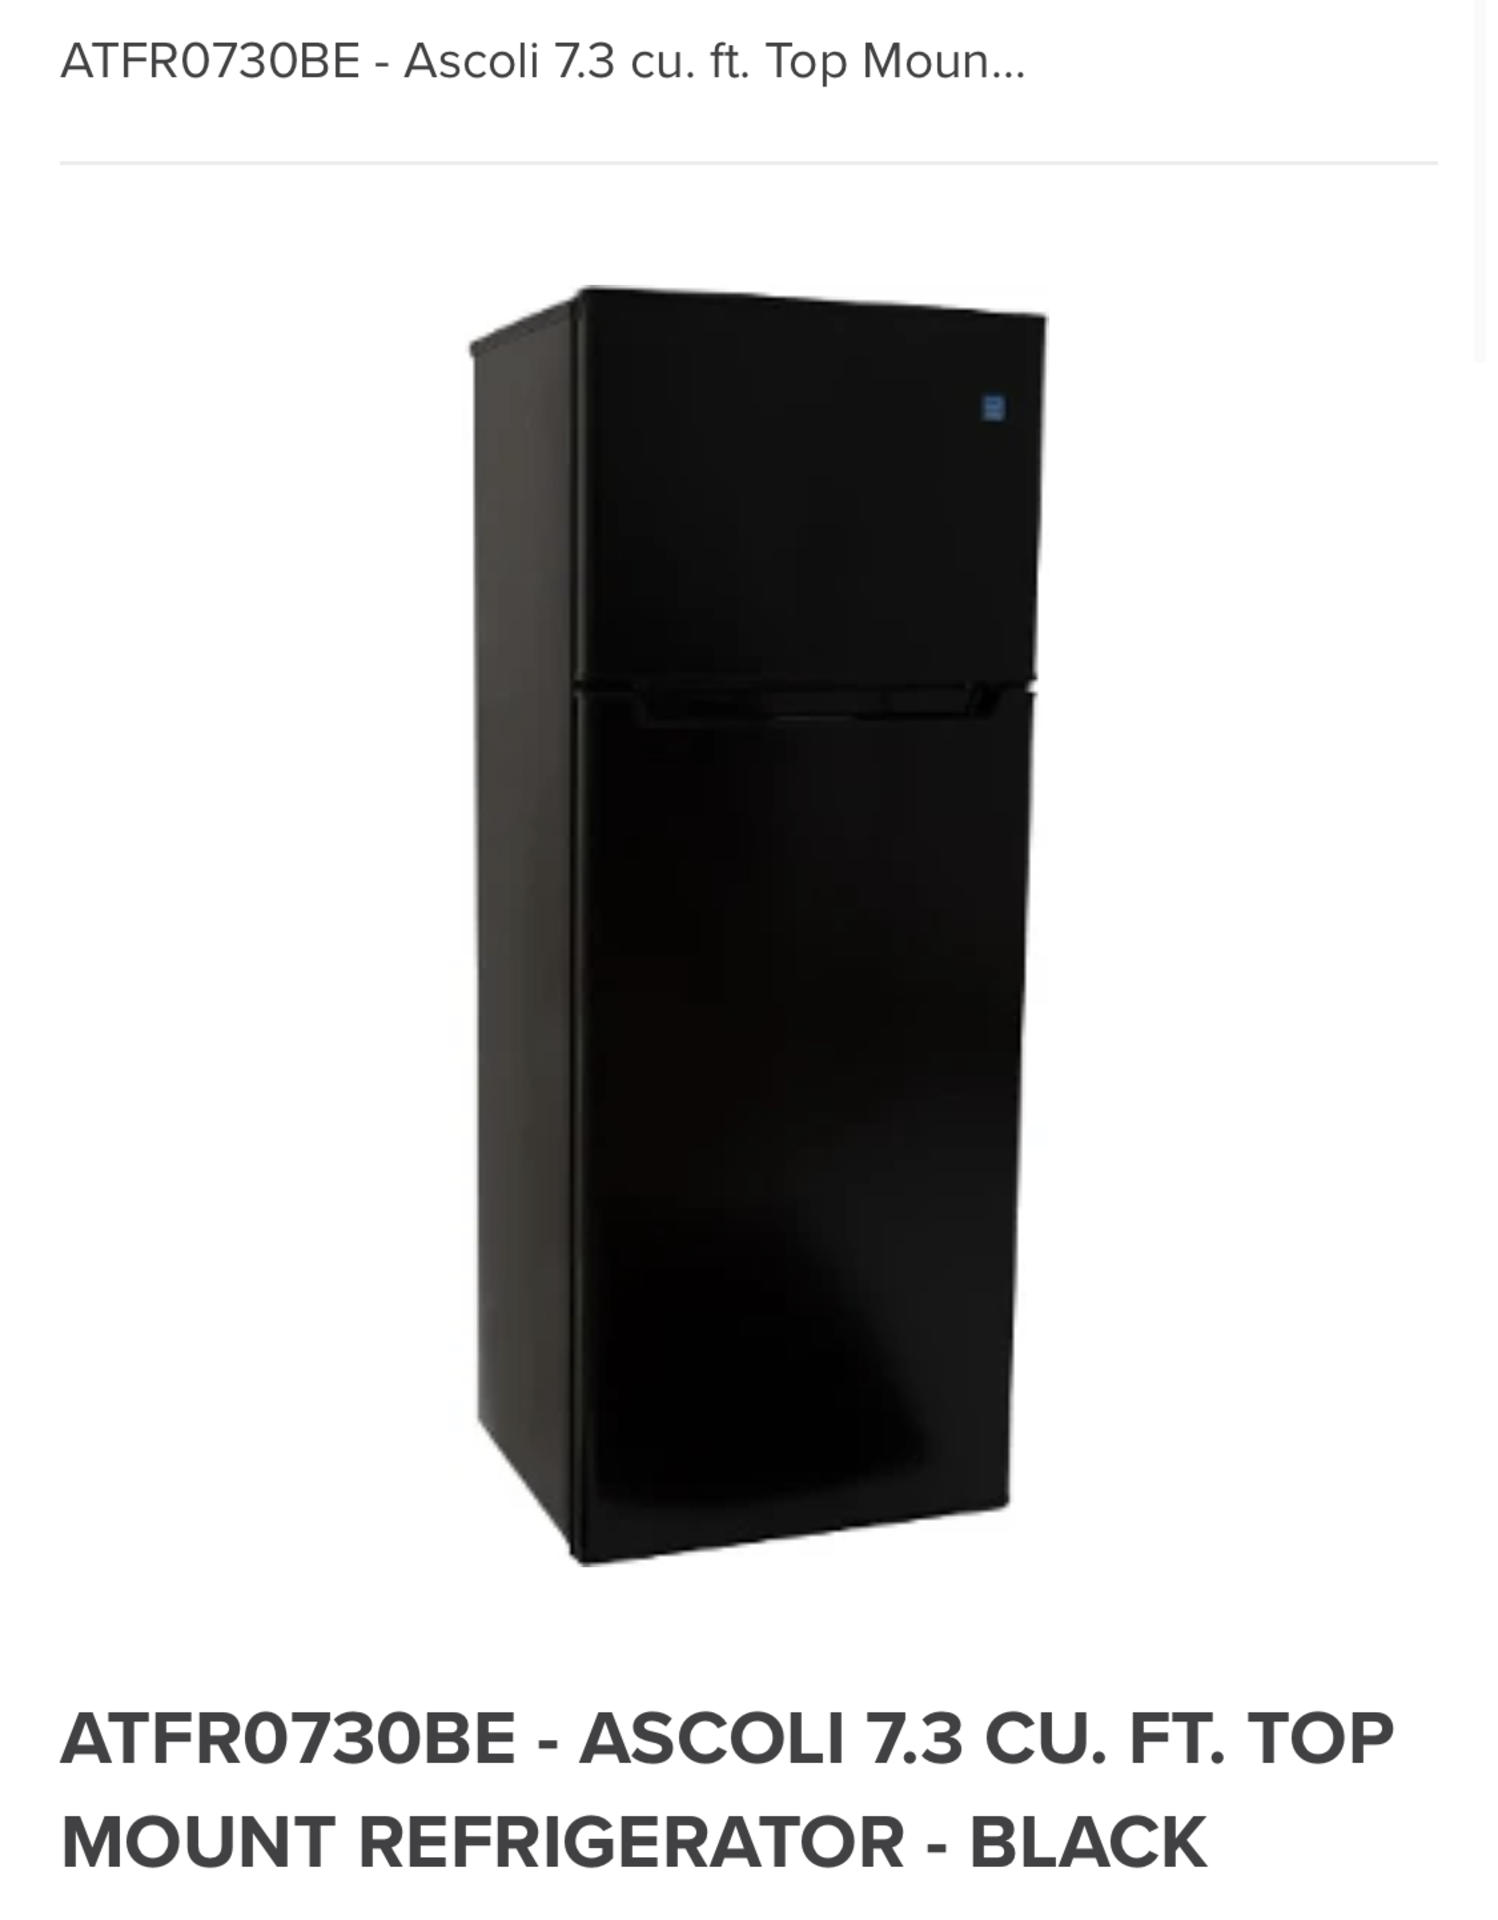 Ascoli 7.3 Cu. Ft. Top Mount Refrigerator - Black